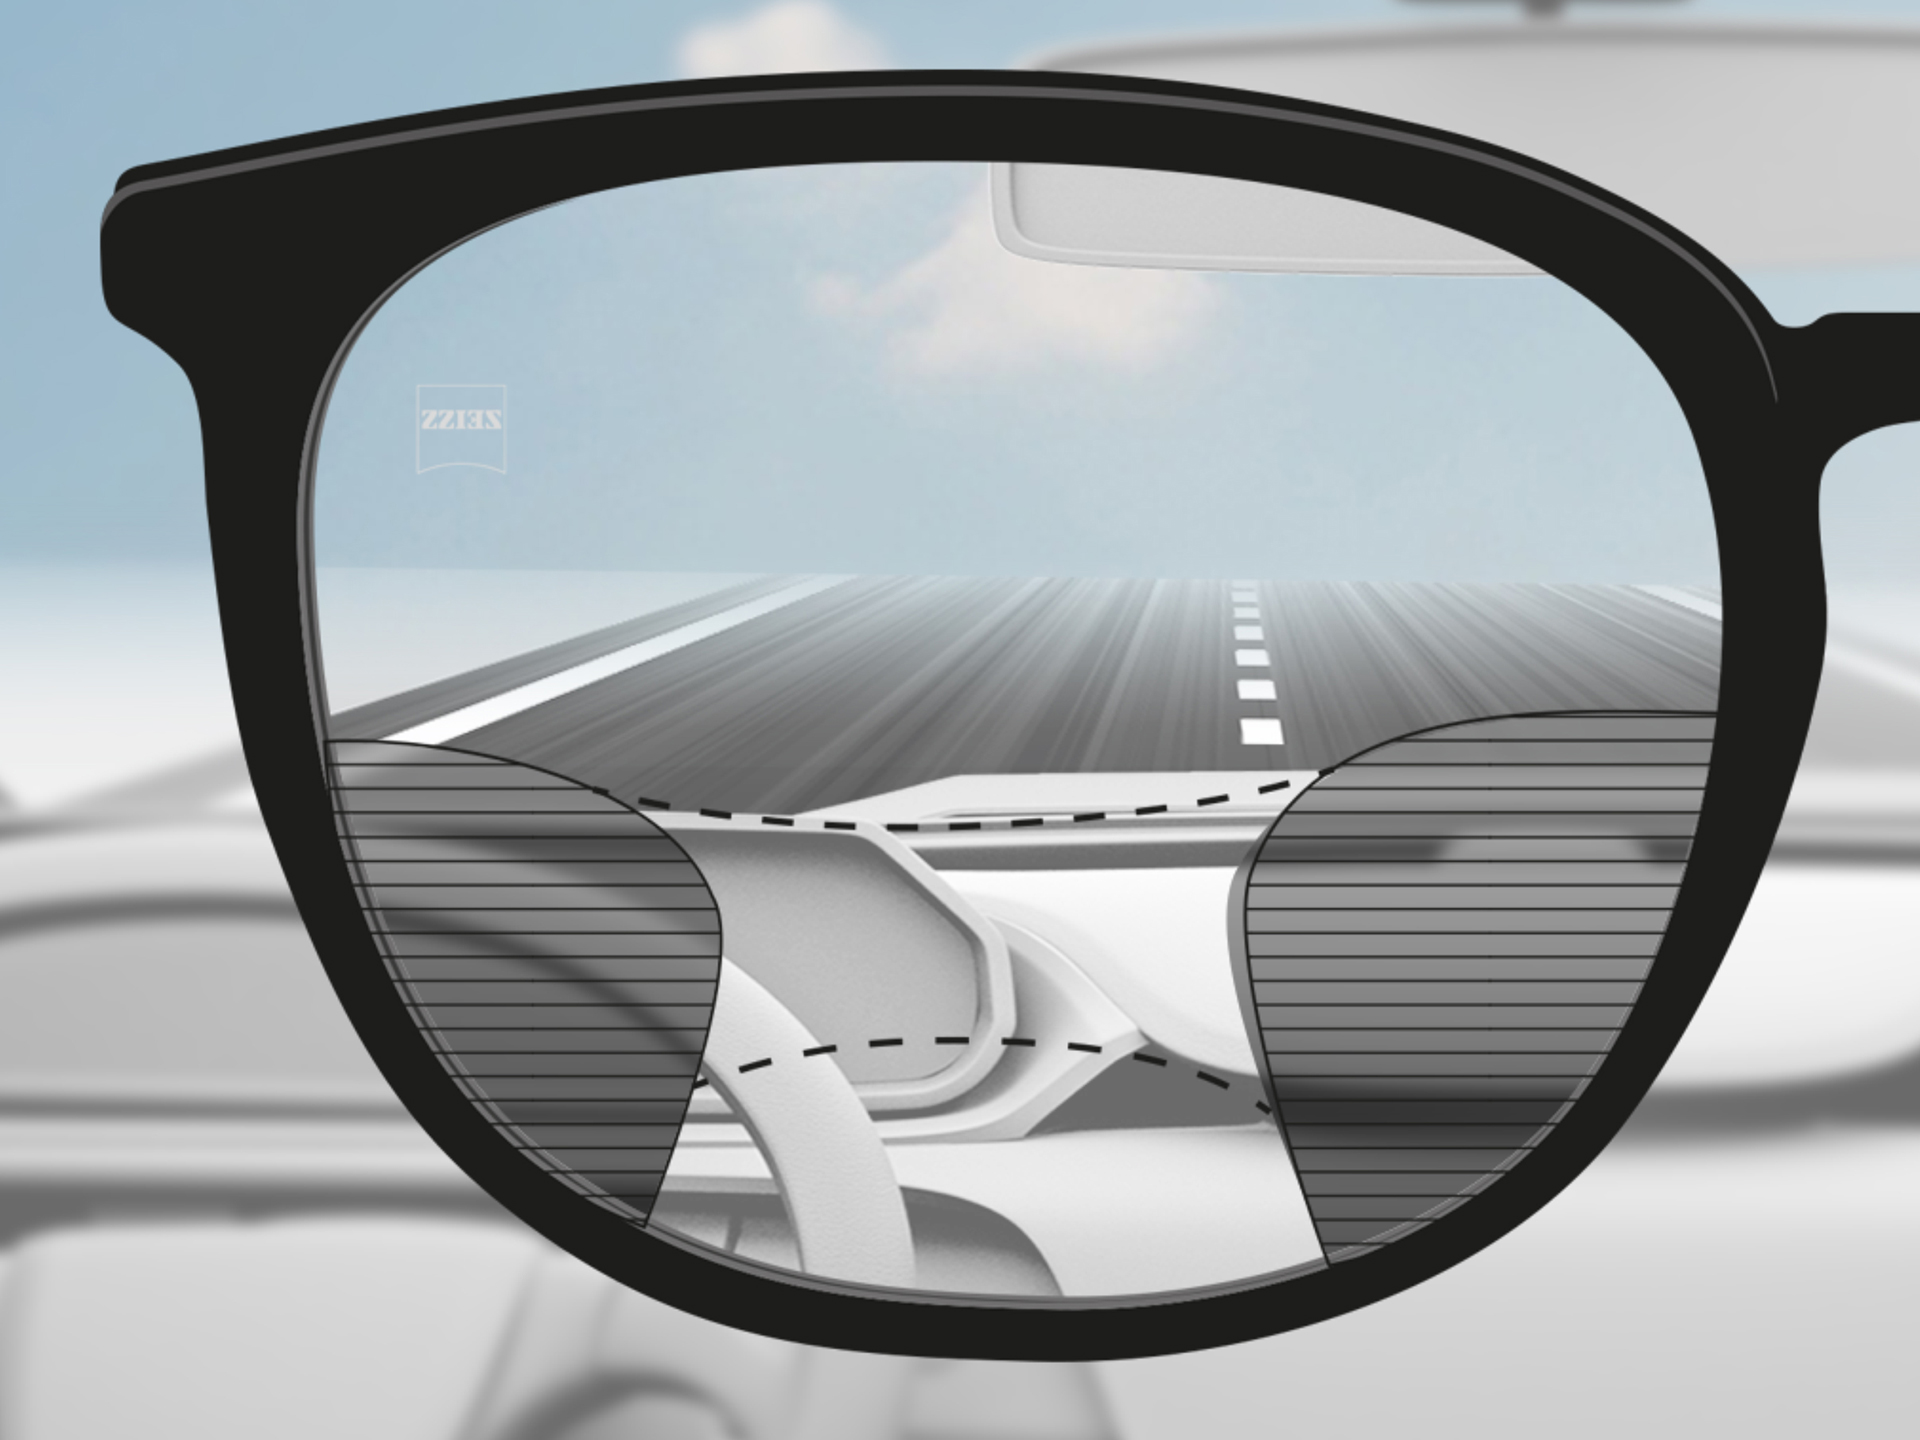 使用 ZEISS 驾驶型渐进镜片获得的视角图像：视野区域经过调整使驾驶者可以同时获得道路和仪表盘的清晰视觉。